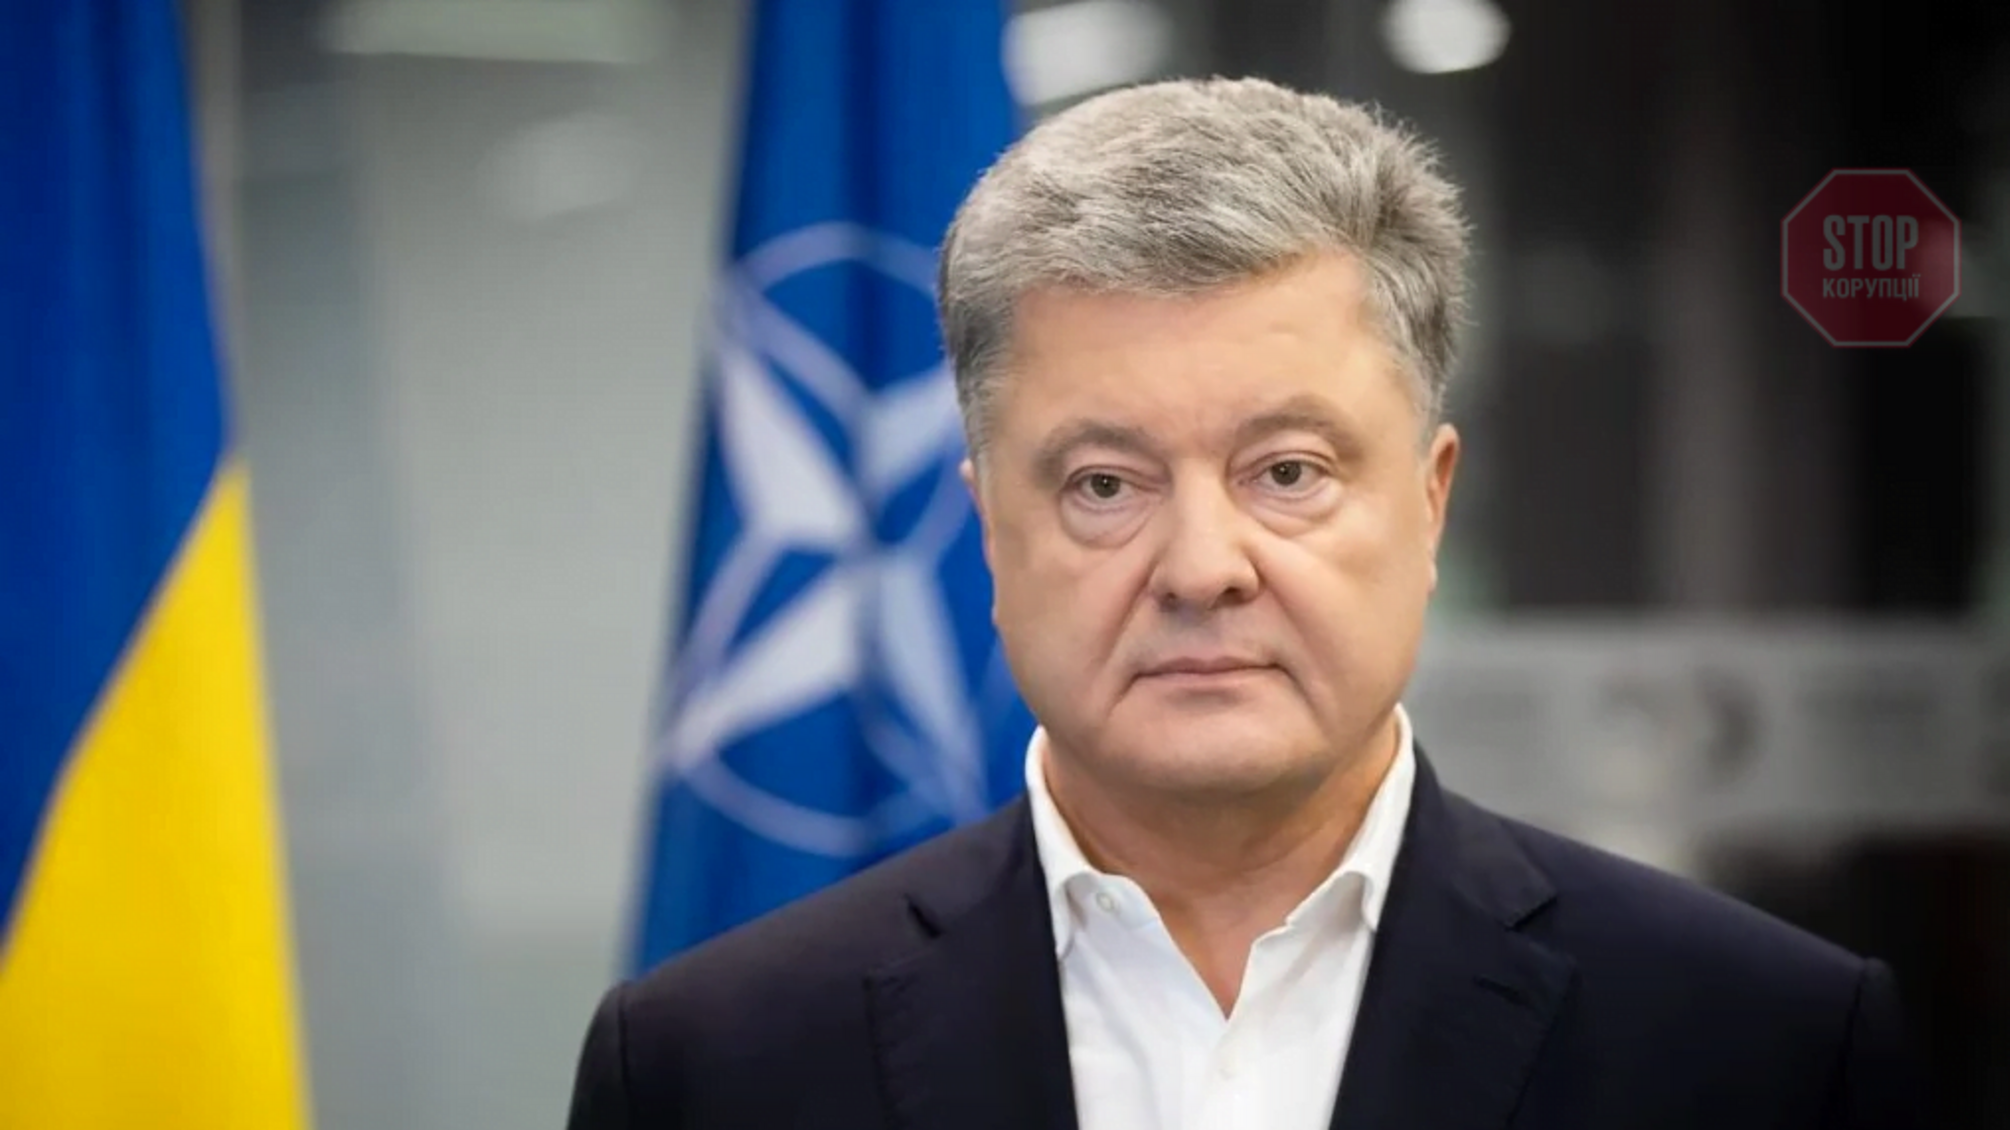 Порошенко: 'Армію знову намагаються знищити, як за часів Януковича'